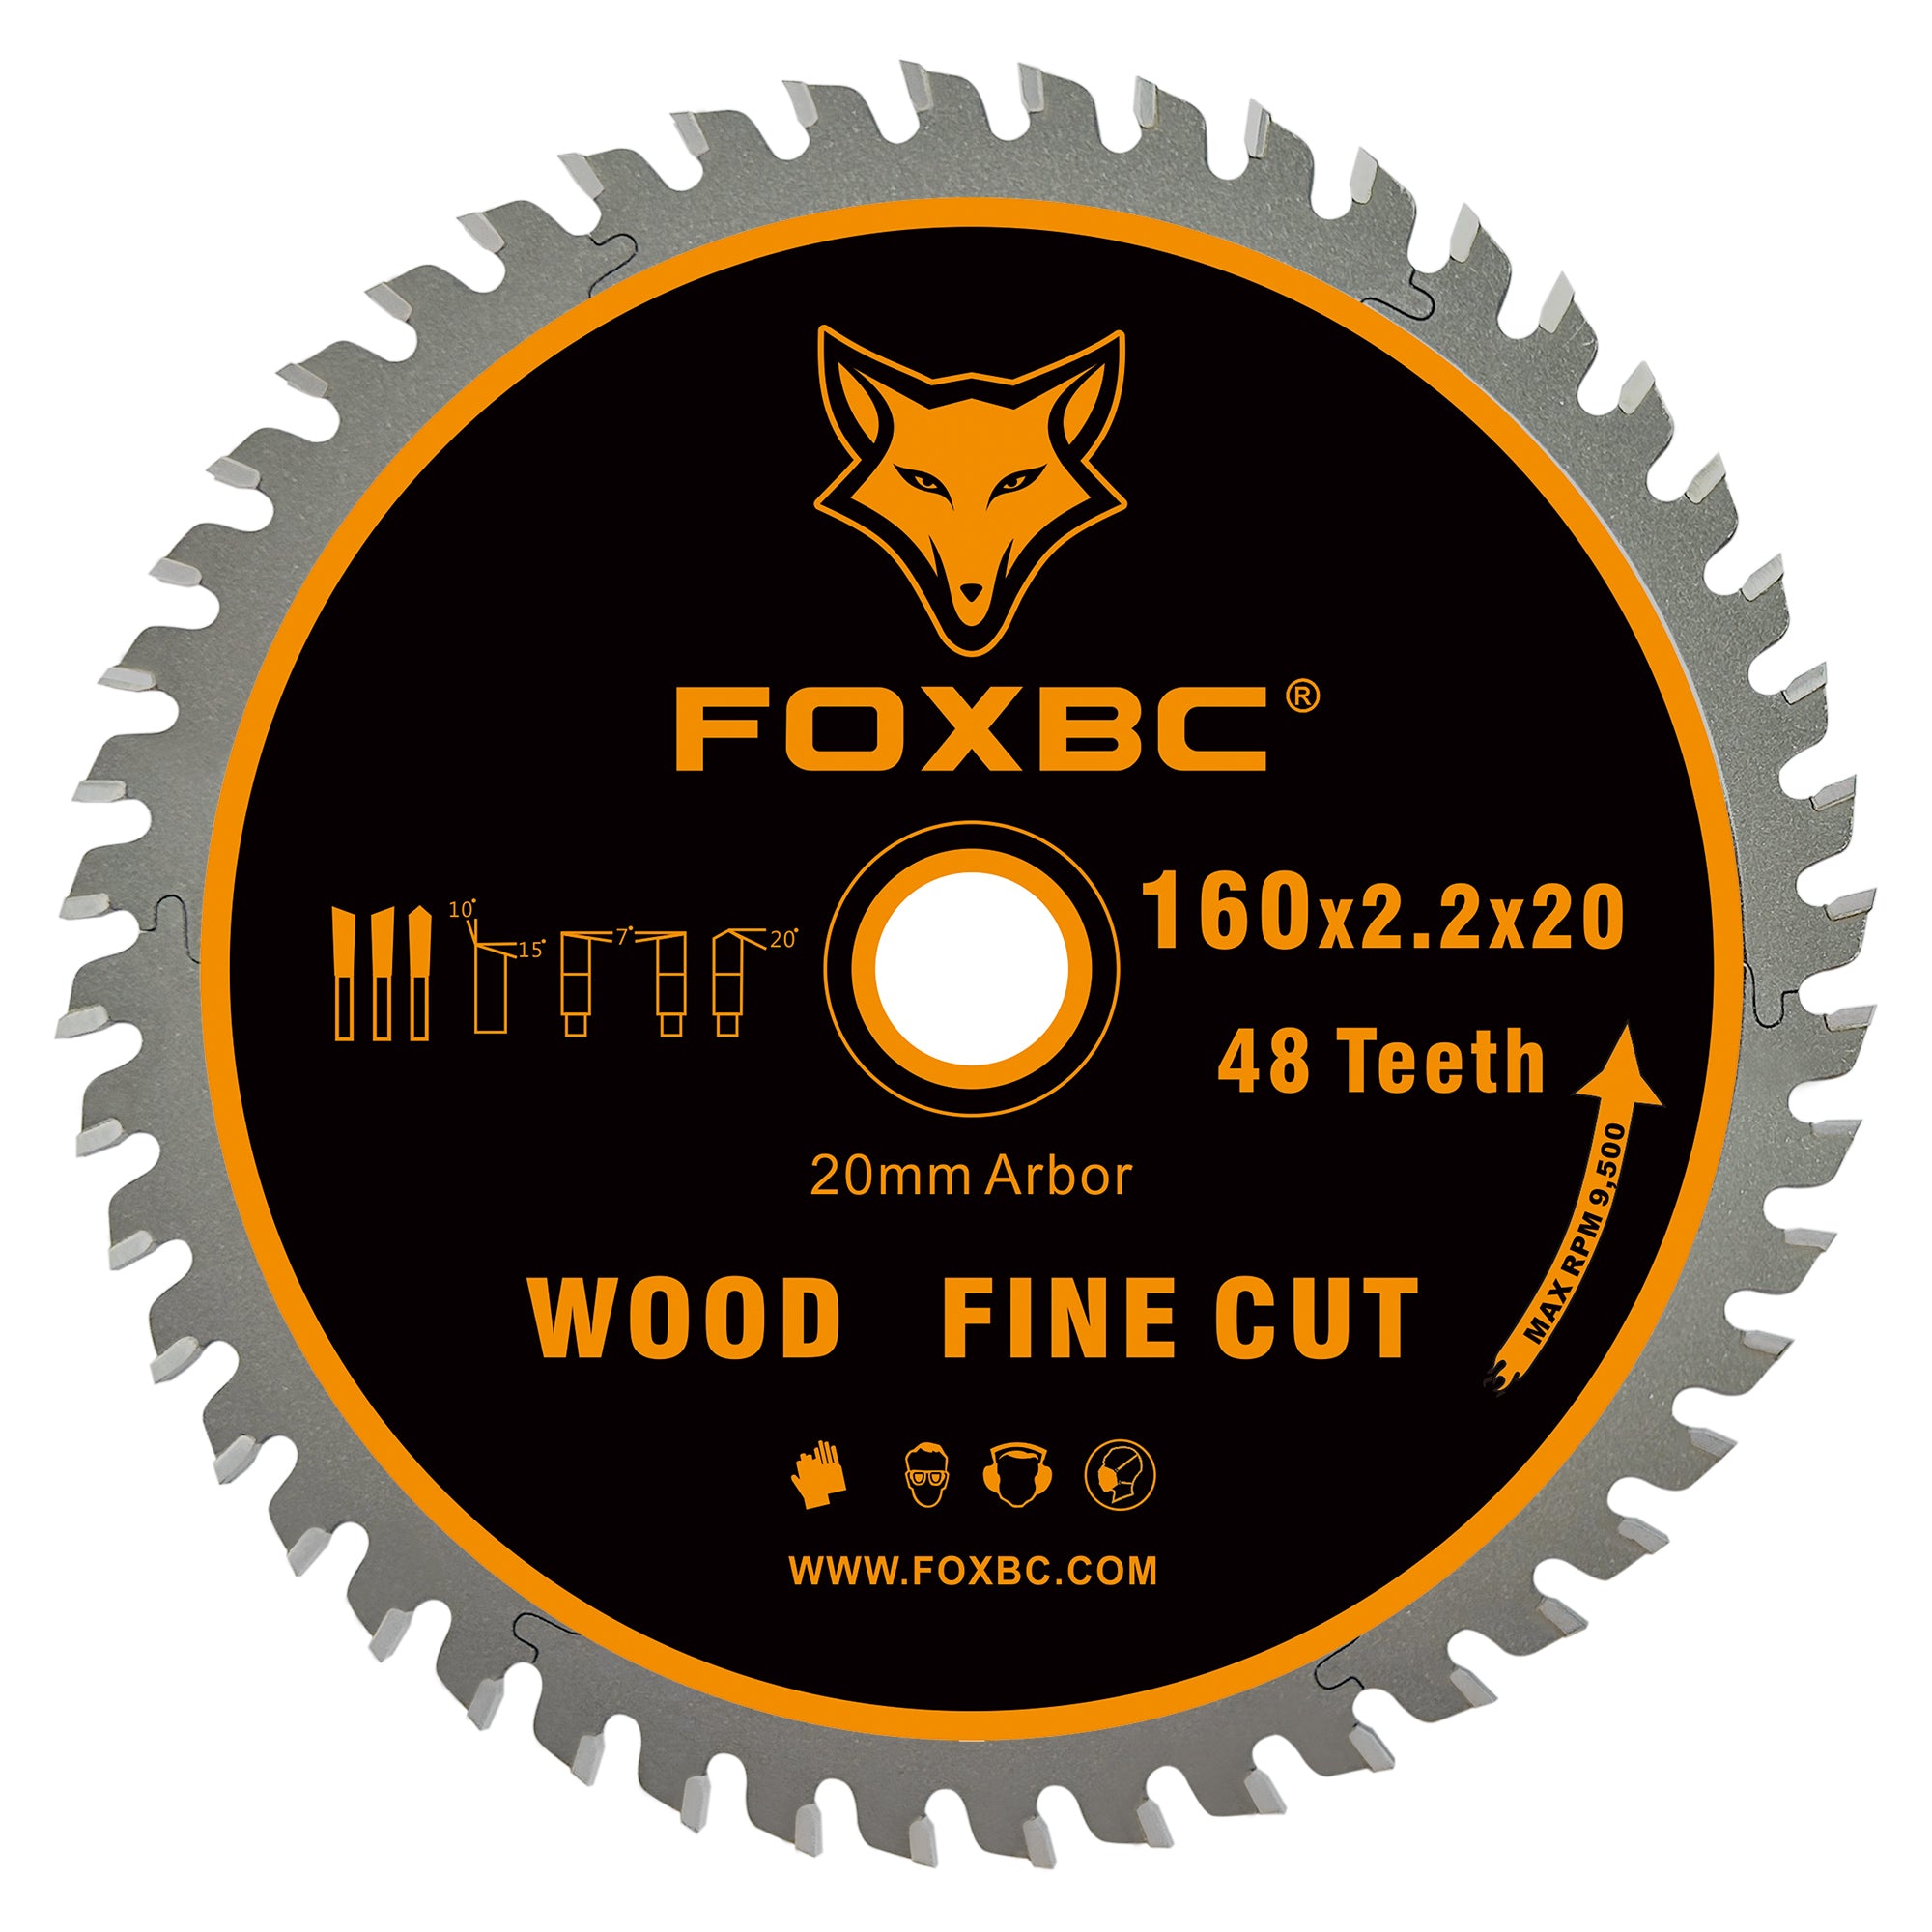 FOXBC 495377 Kettensägeblatt 160 x 2,2 x 20 mm, 48 Zähne, Holz, Feinschnitt, für Festool TS 55, TSC 55, ATF 55, AP 55, DeWalt DWS520K und Makita SP6000J